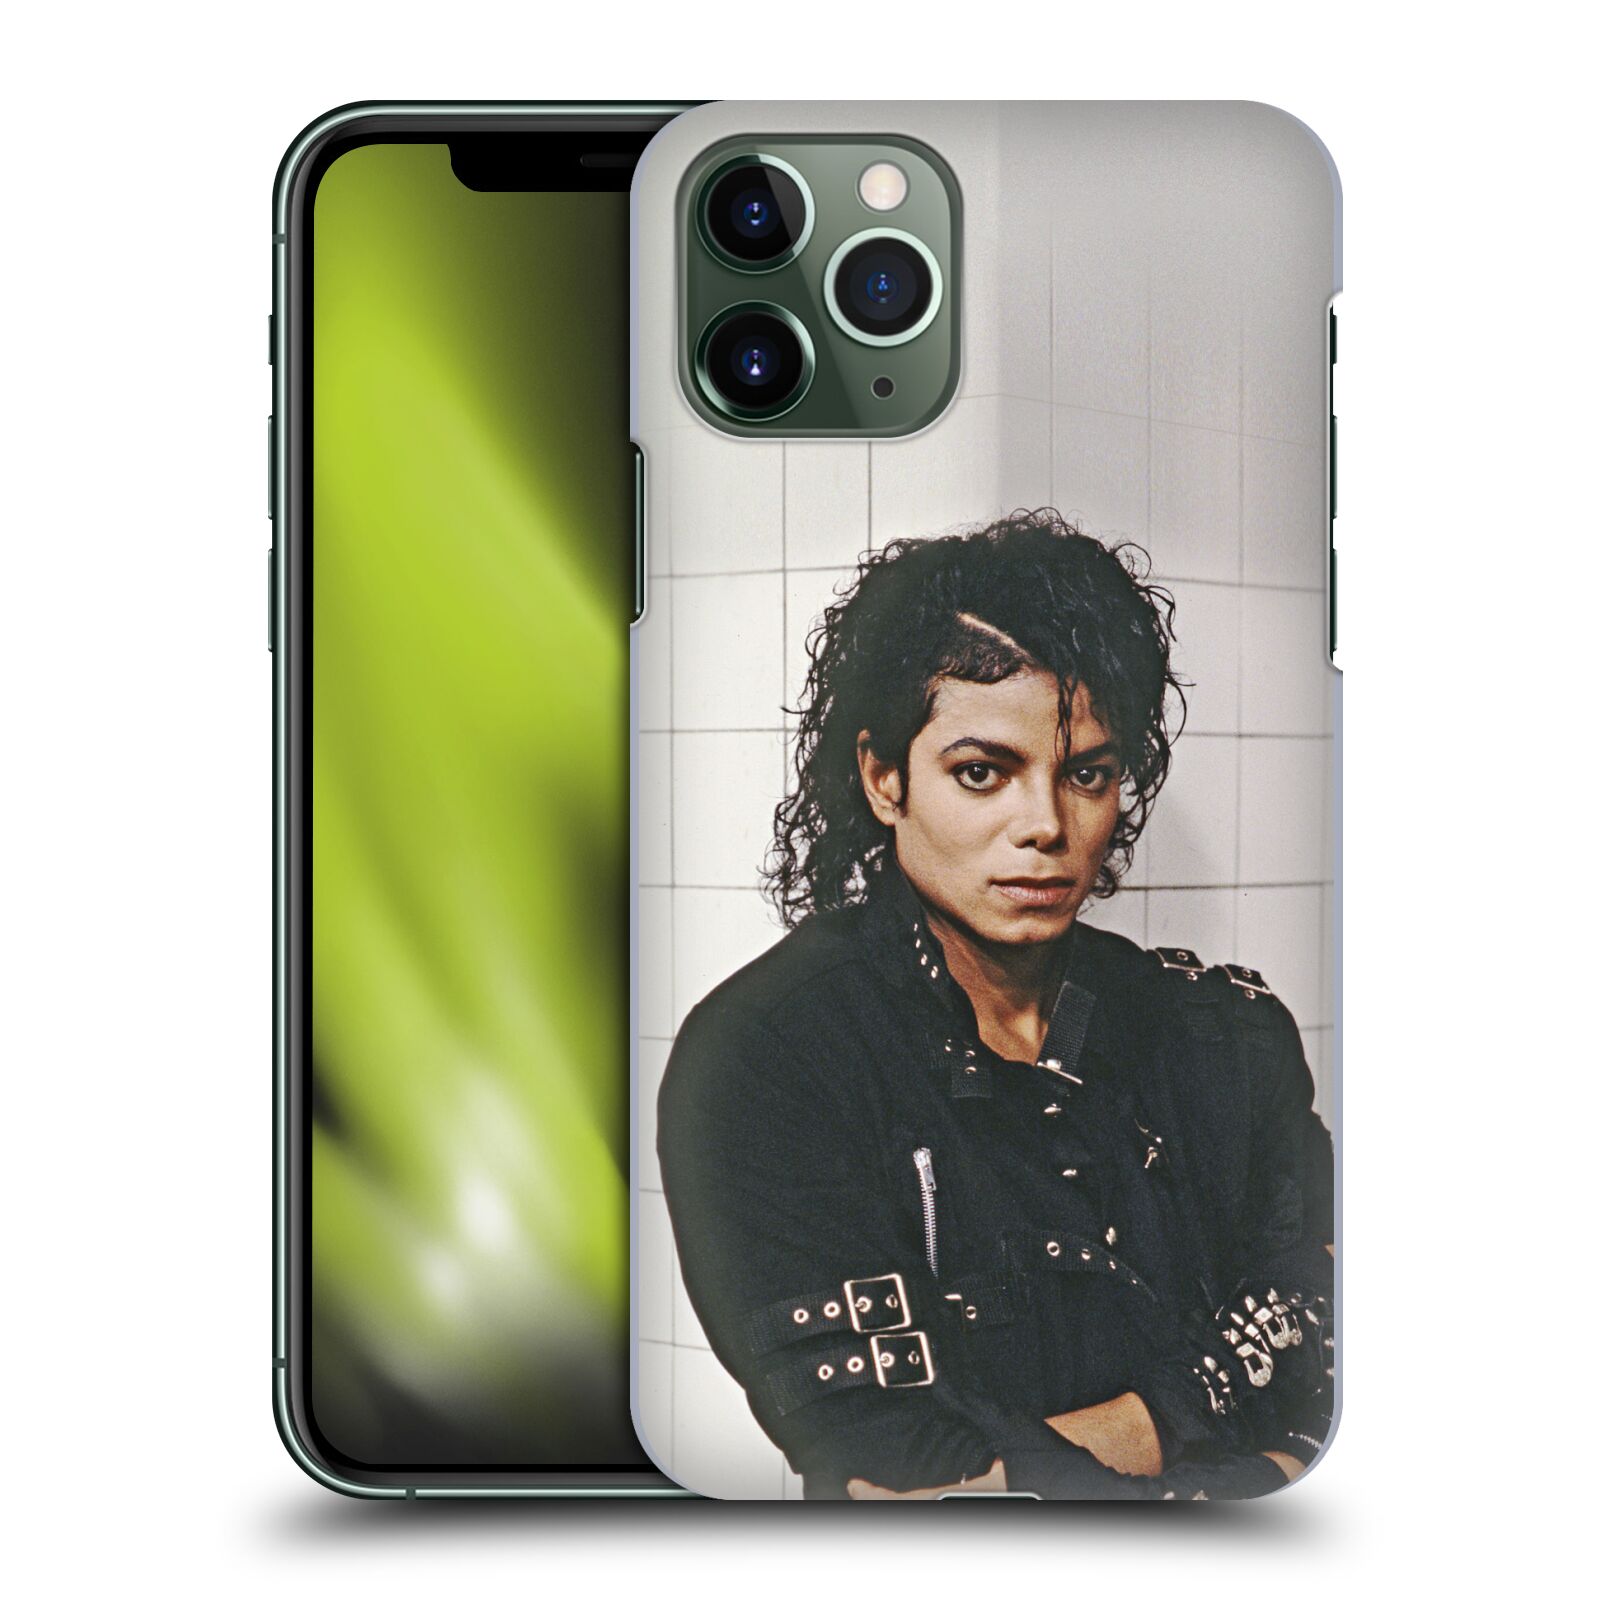 Zadní obal pro mobil Apple Iphone 11 PRO - HEAD CASE - Zpěvák Michael Jackson - pohled